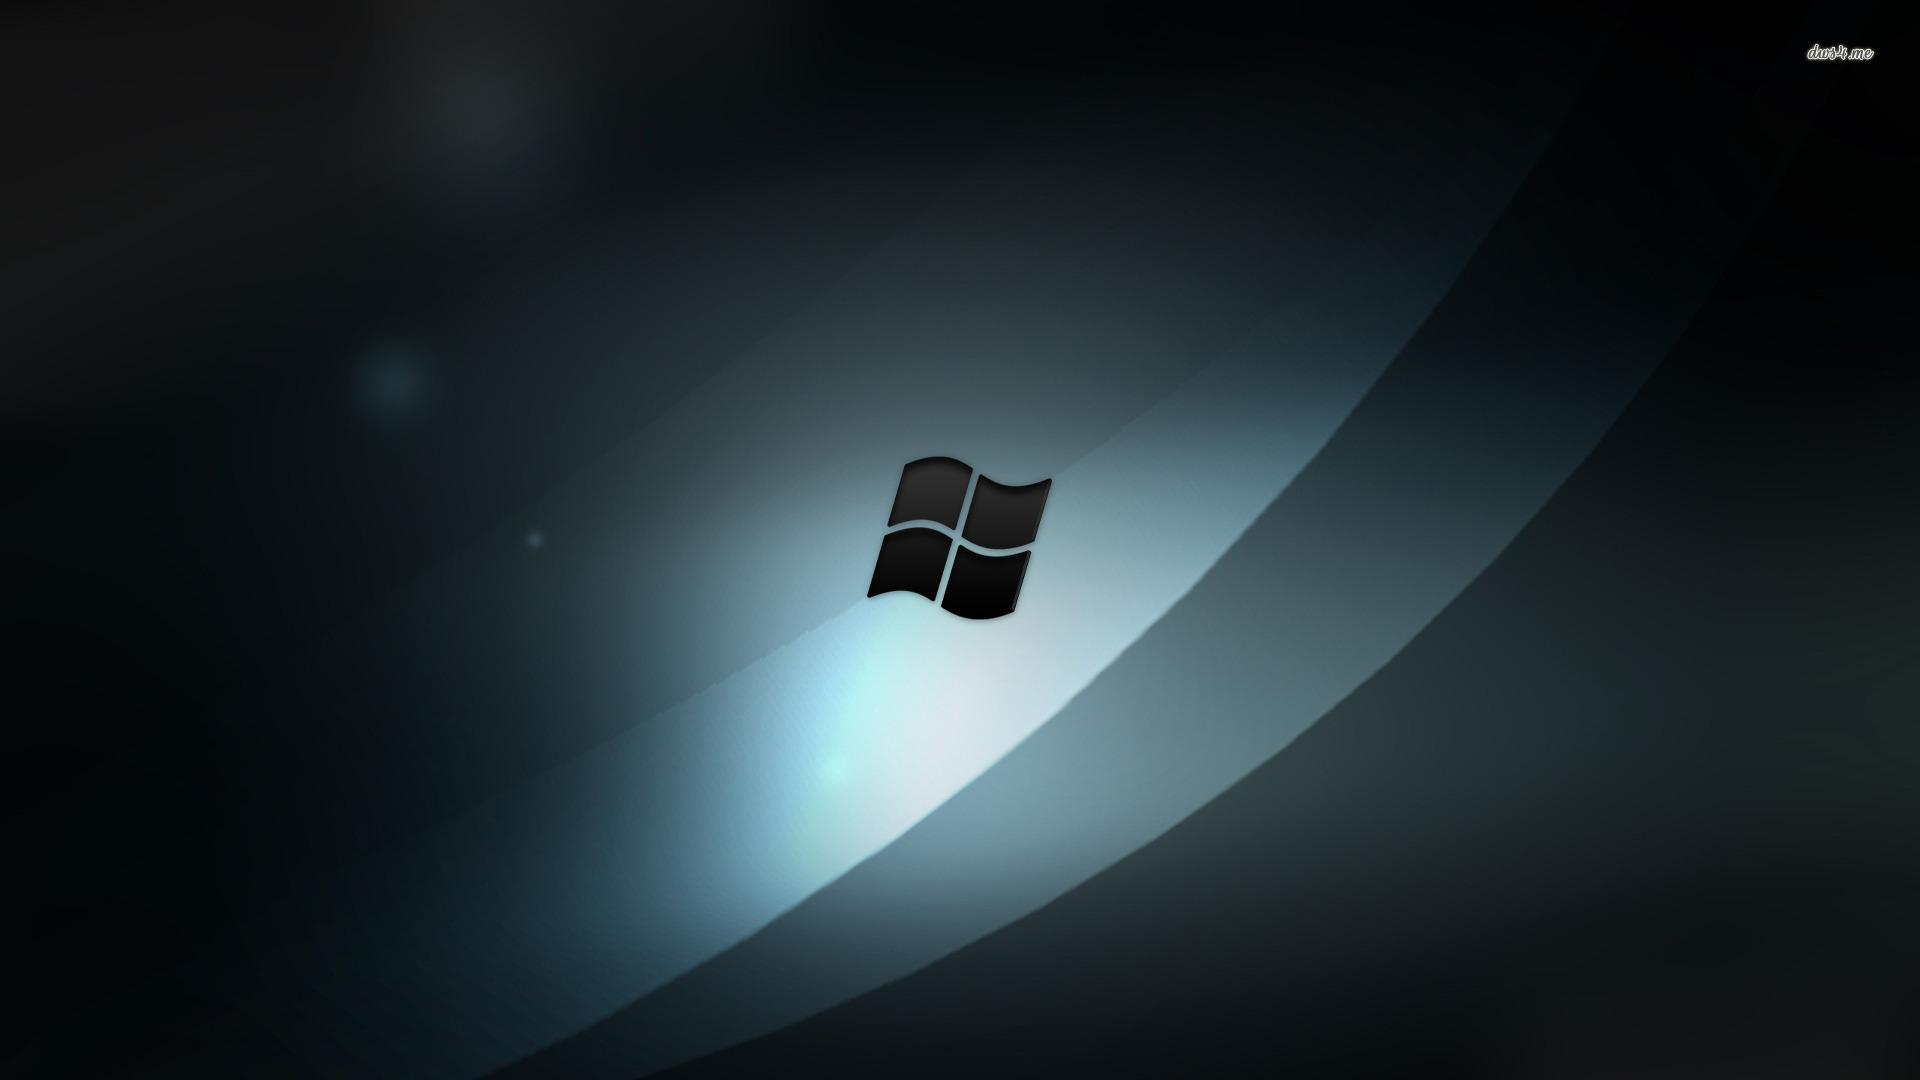 Windows 10 Hd Dark Wallpaper - Wallpapersafari